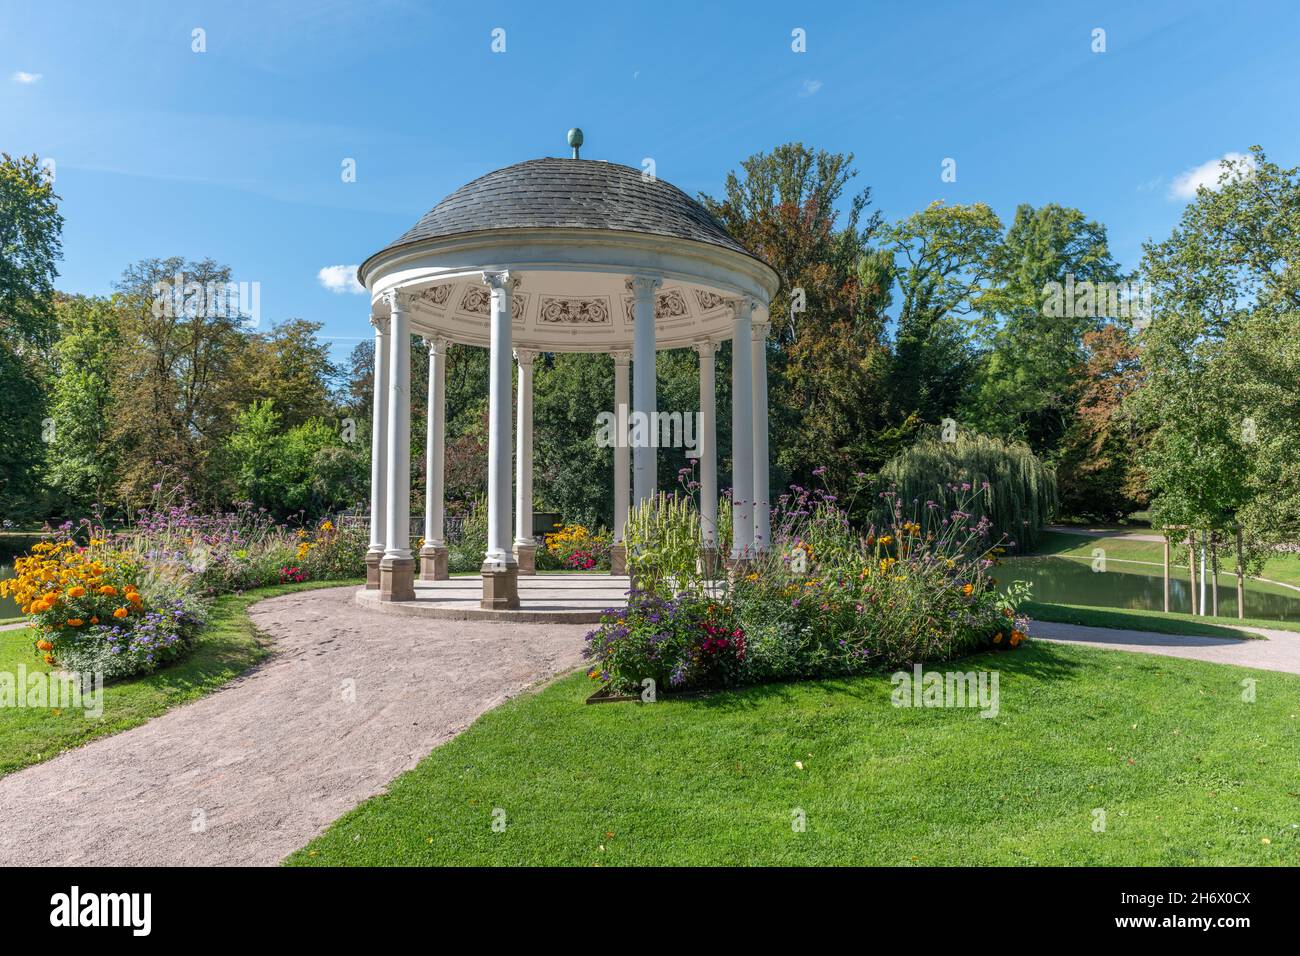 Kreisförmiger Tempel, bekannt als Tempel der Liebe (Anfang des 19th. Jahrhunderts) im neoklassischen Stil. Parc de l'Orangerie in Straßburg. Frankreich, Europa. Stockfoto